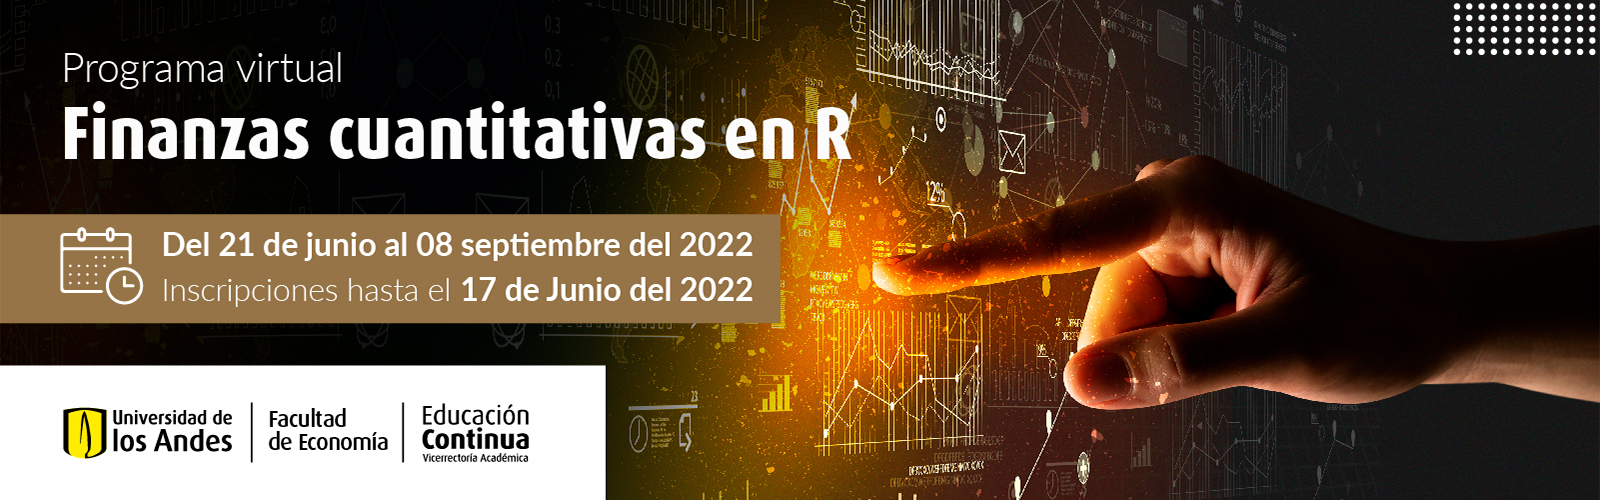 2022-Finanzas-cuantitativas-en-R.jpg